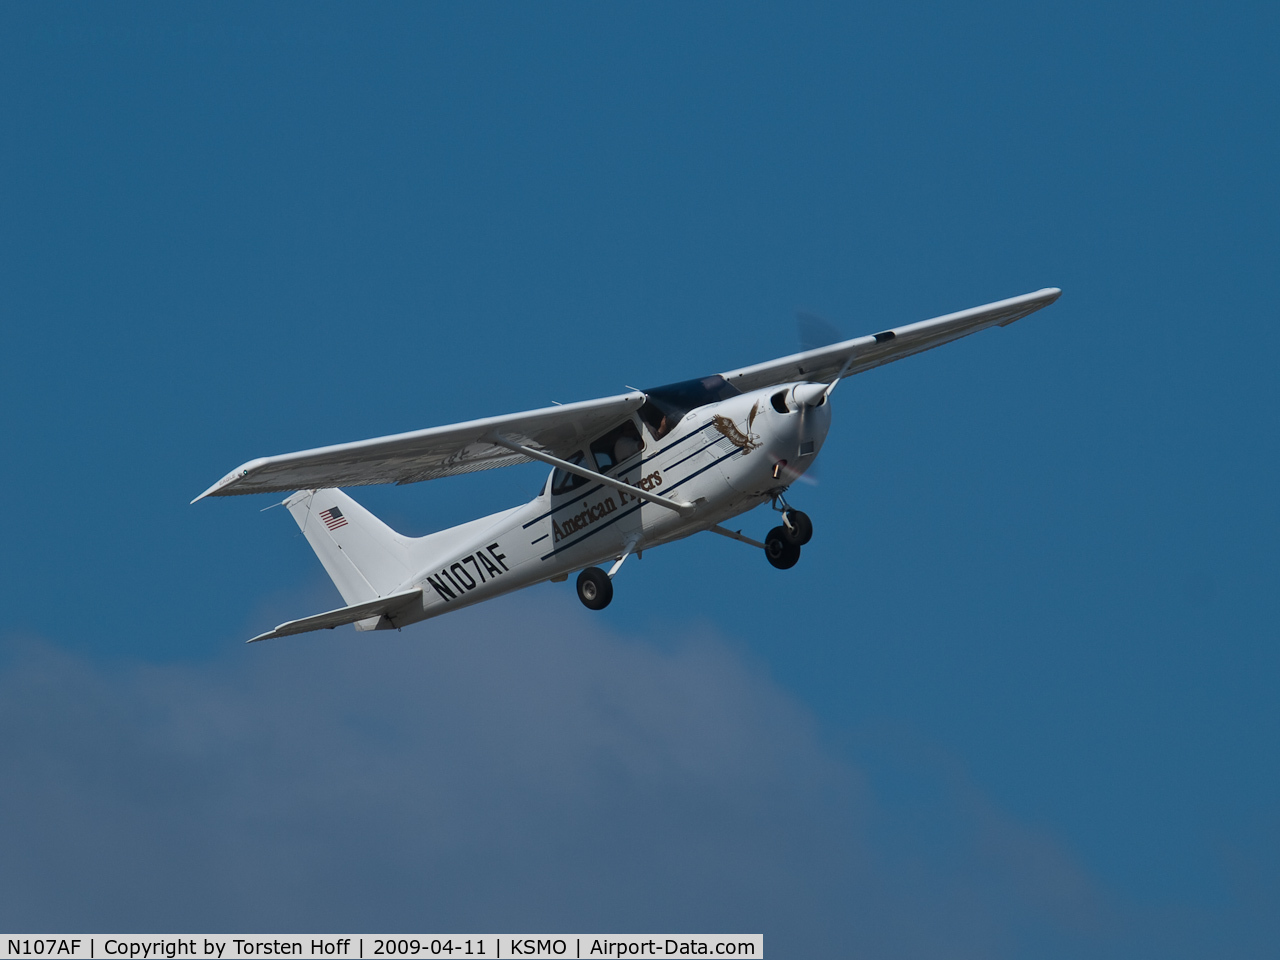 N107AF, 2001 Cessna 172R C/N 17281056, N107AF departing from RWY 03